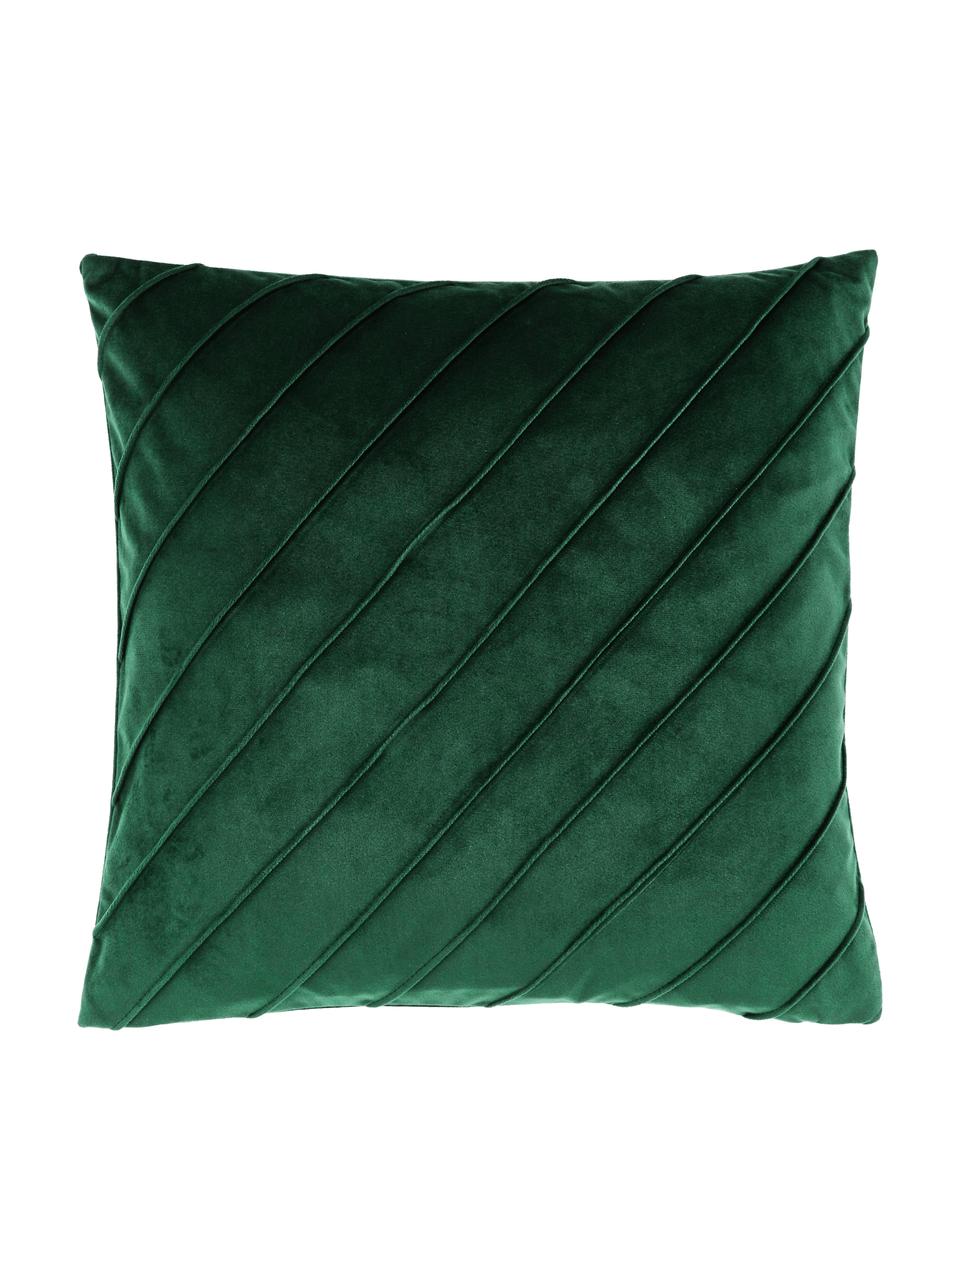 Federa arredo in velluto verde scuro con motivo strutturato Leyla, Velluto (100% poliestere), Verde, Larg. 40 x Lung. 40 cm